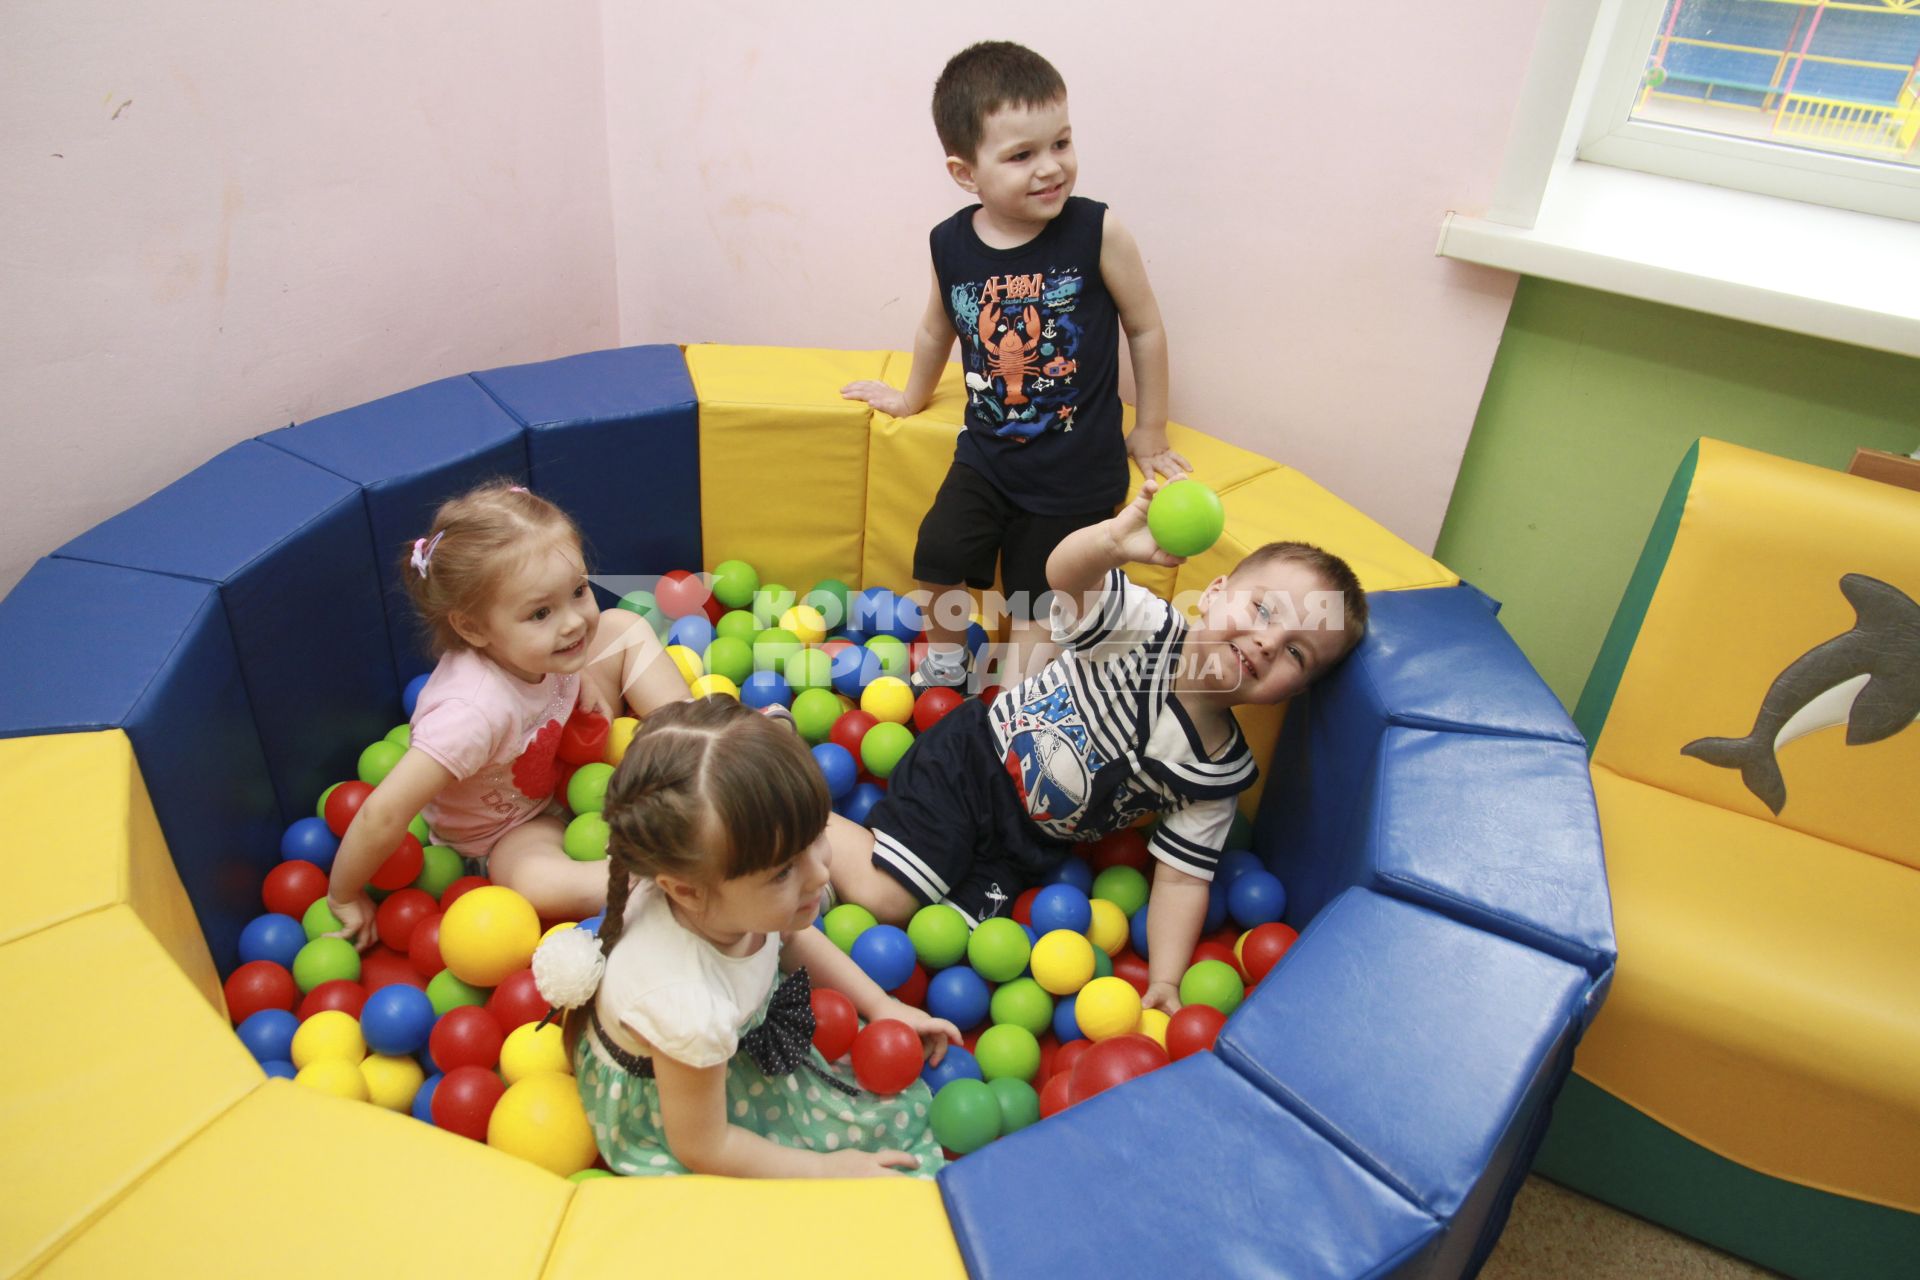 Барнаул. Дети среди игрушек в детском саду.